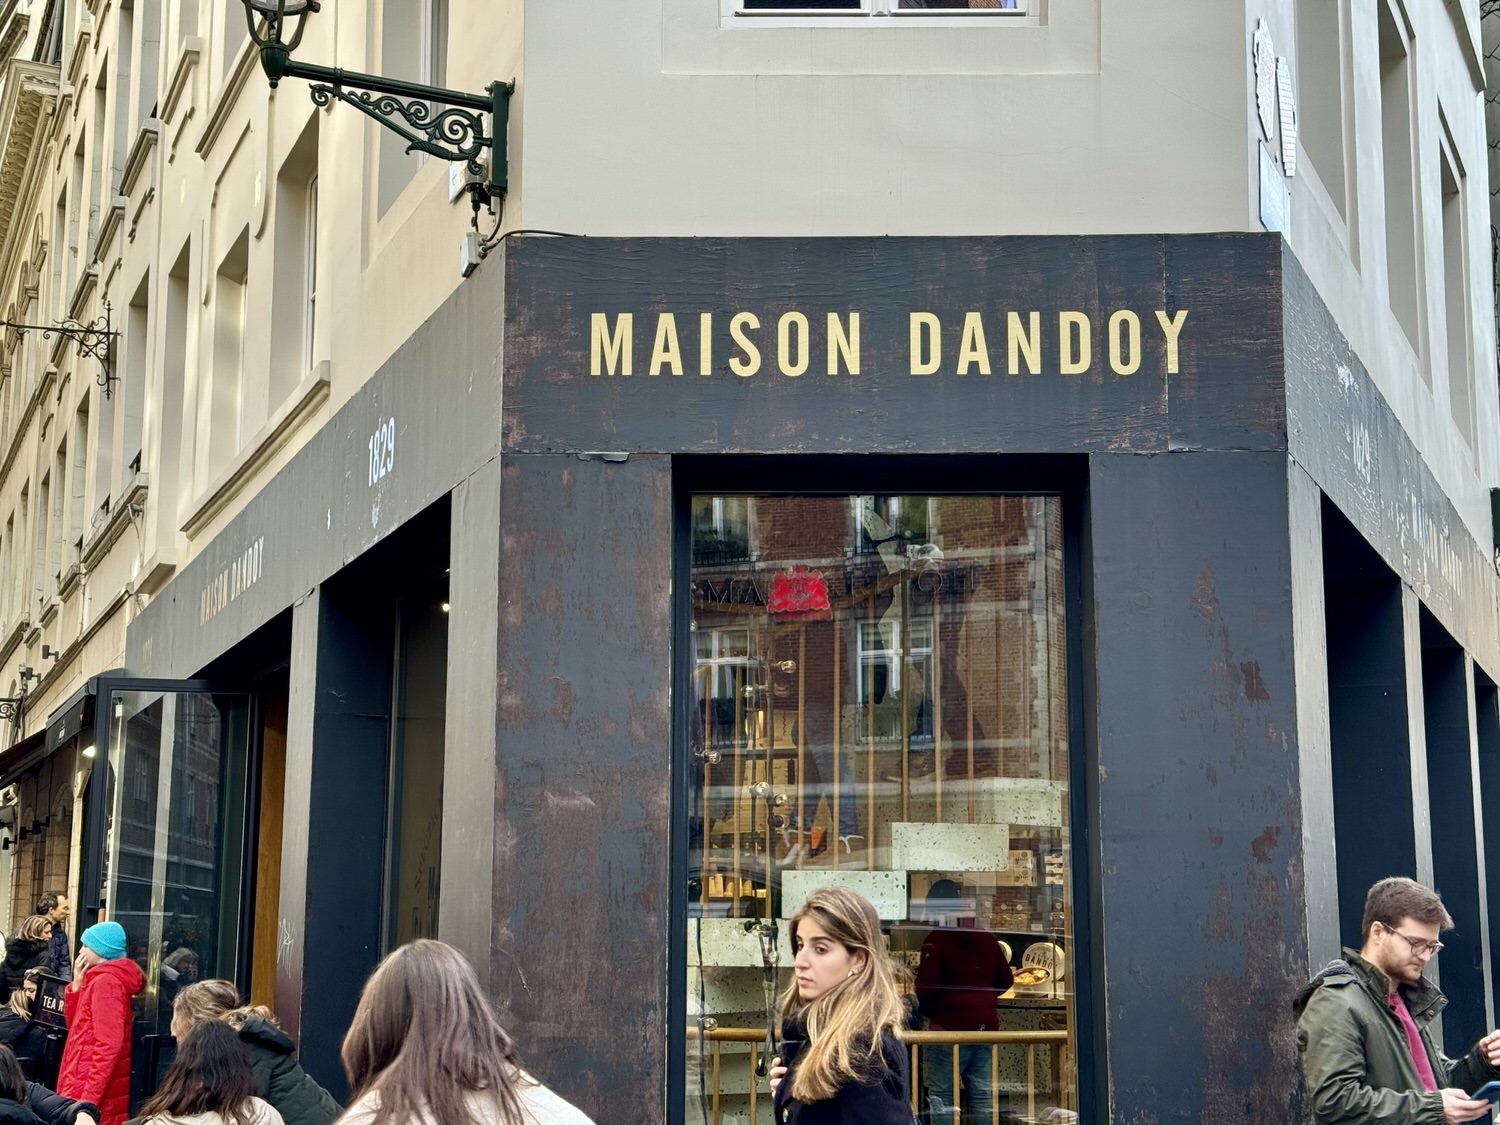 比利時 鬆餅發源地
布魯塞爾3家鬆餅評測
Maison Dandoy
Le Funambule
Obe
列日鬆餅(Liège Waffle)
布魯塞爾鬆餅(Brussels Waffle)
聖余貝爾長廊分店(Galeries)
布魯日Chez Albert